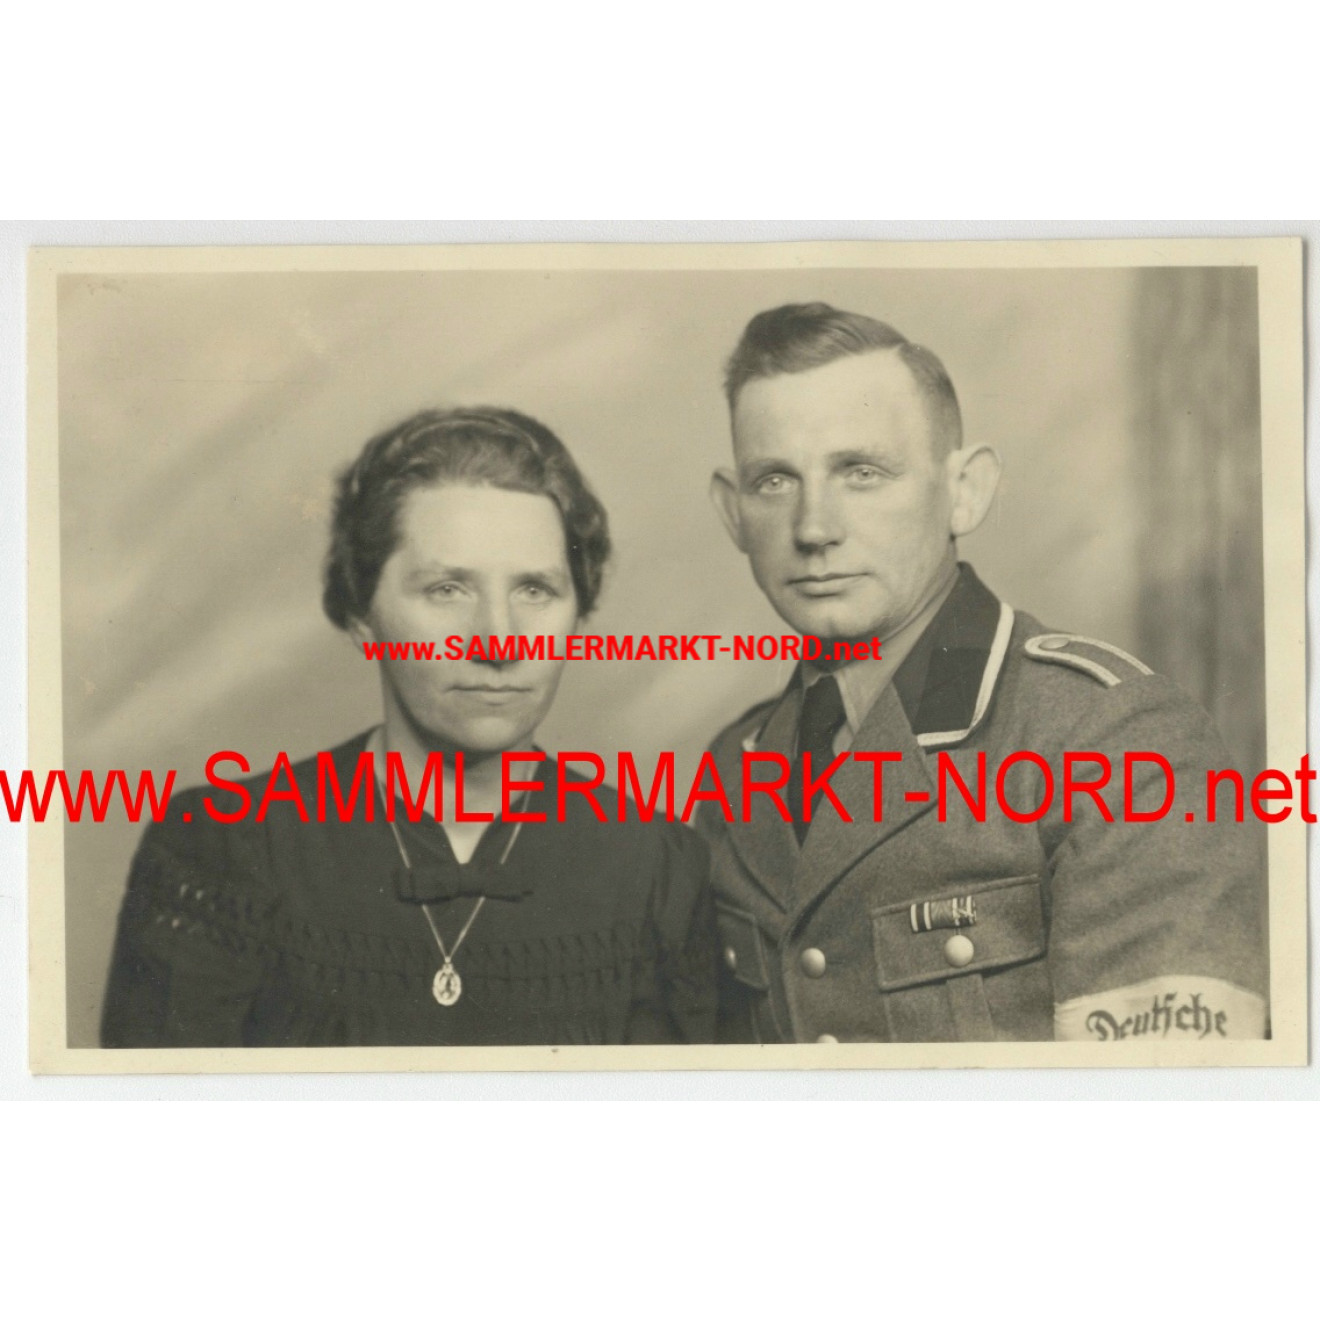 RAD troop leader with armlet "Deutsche Wehrmacht"